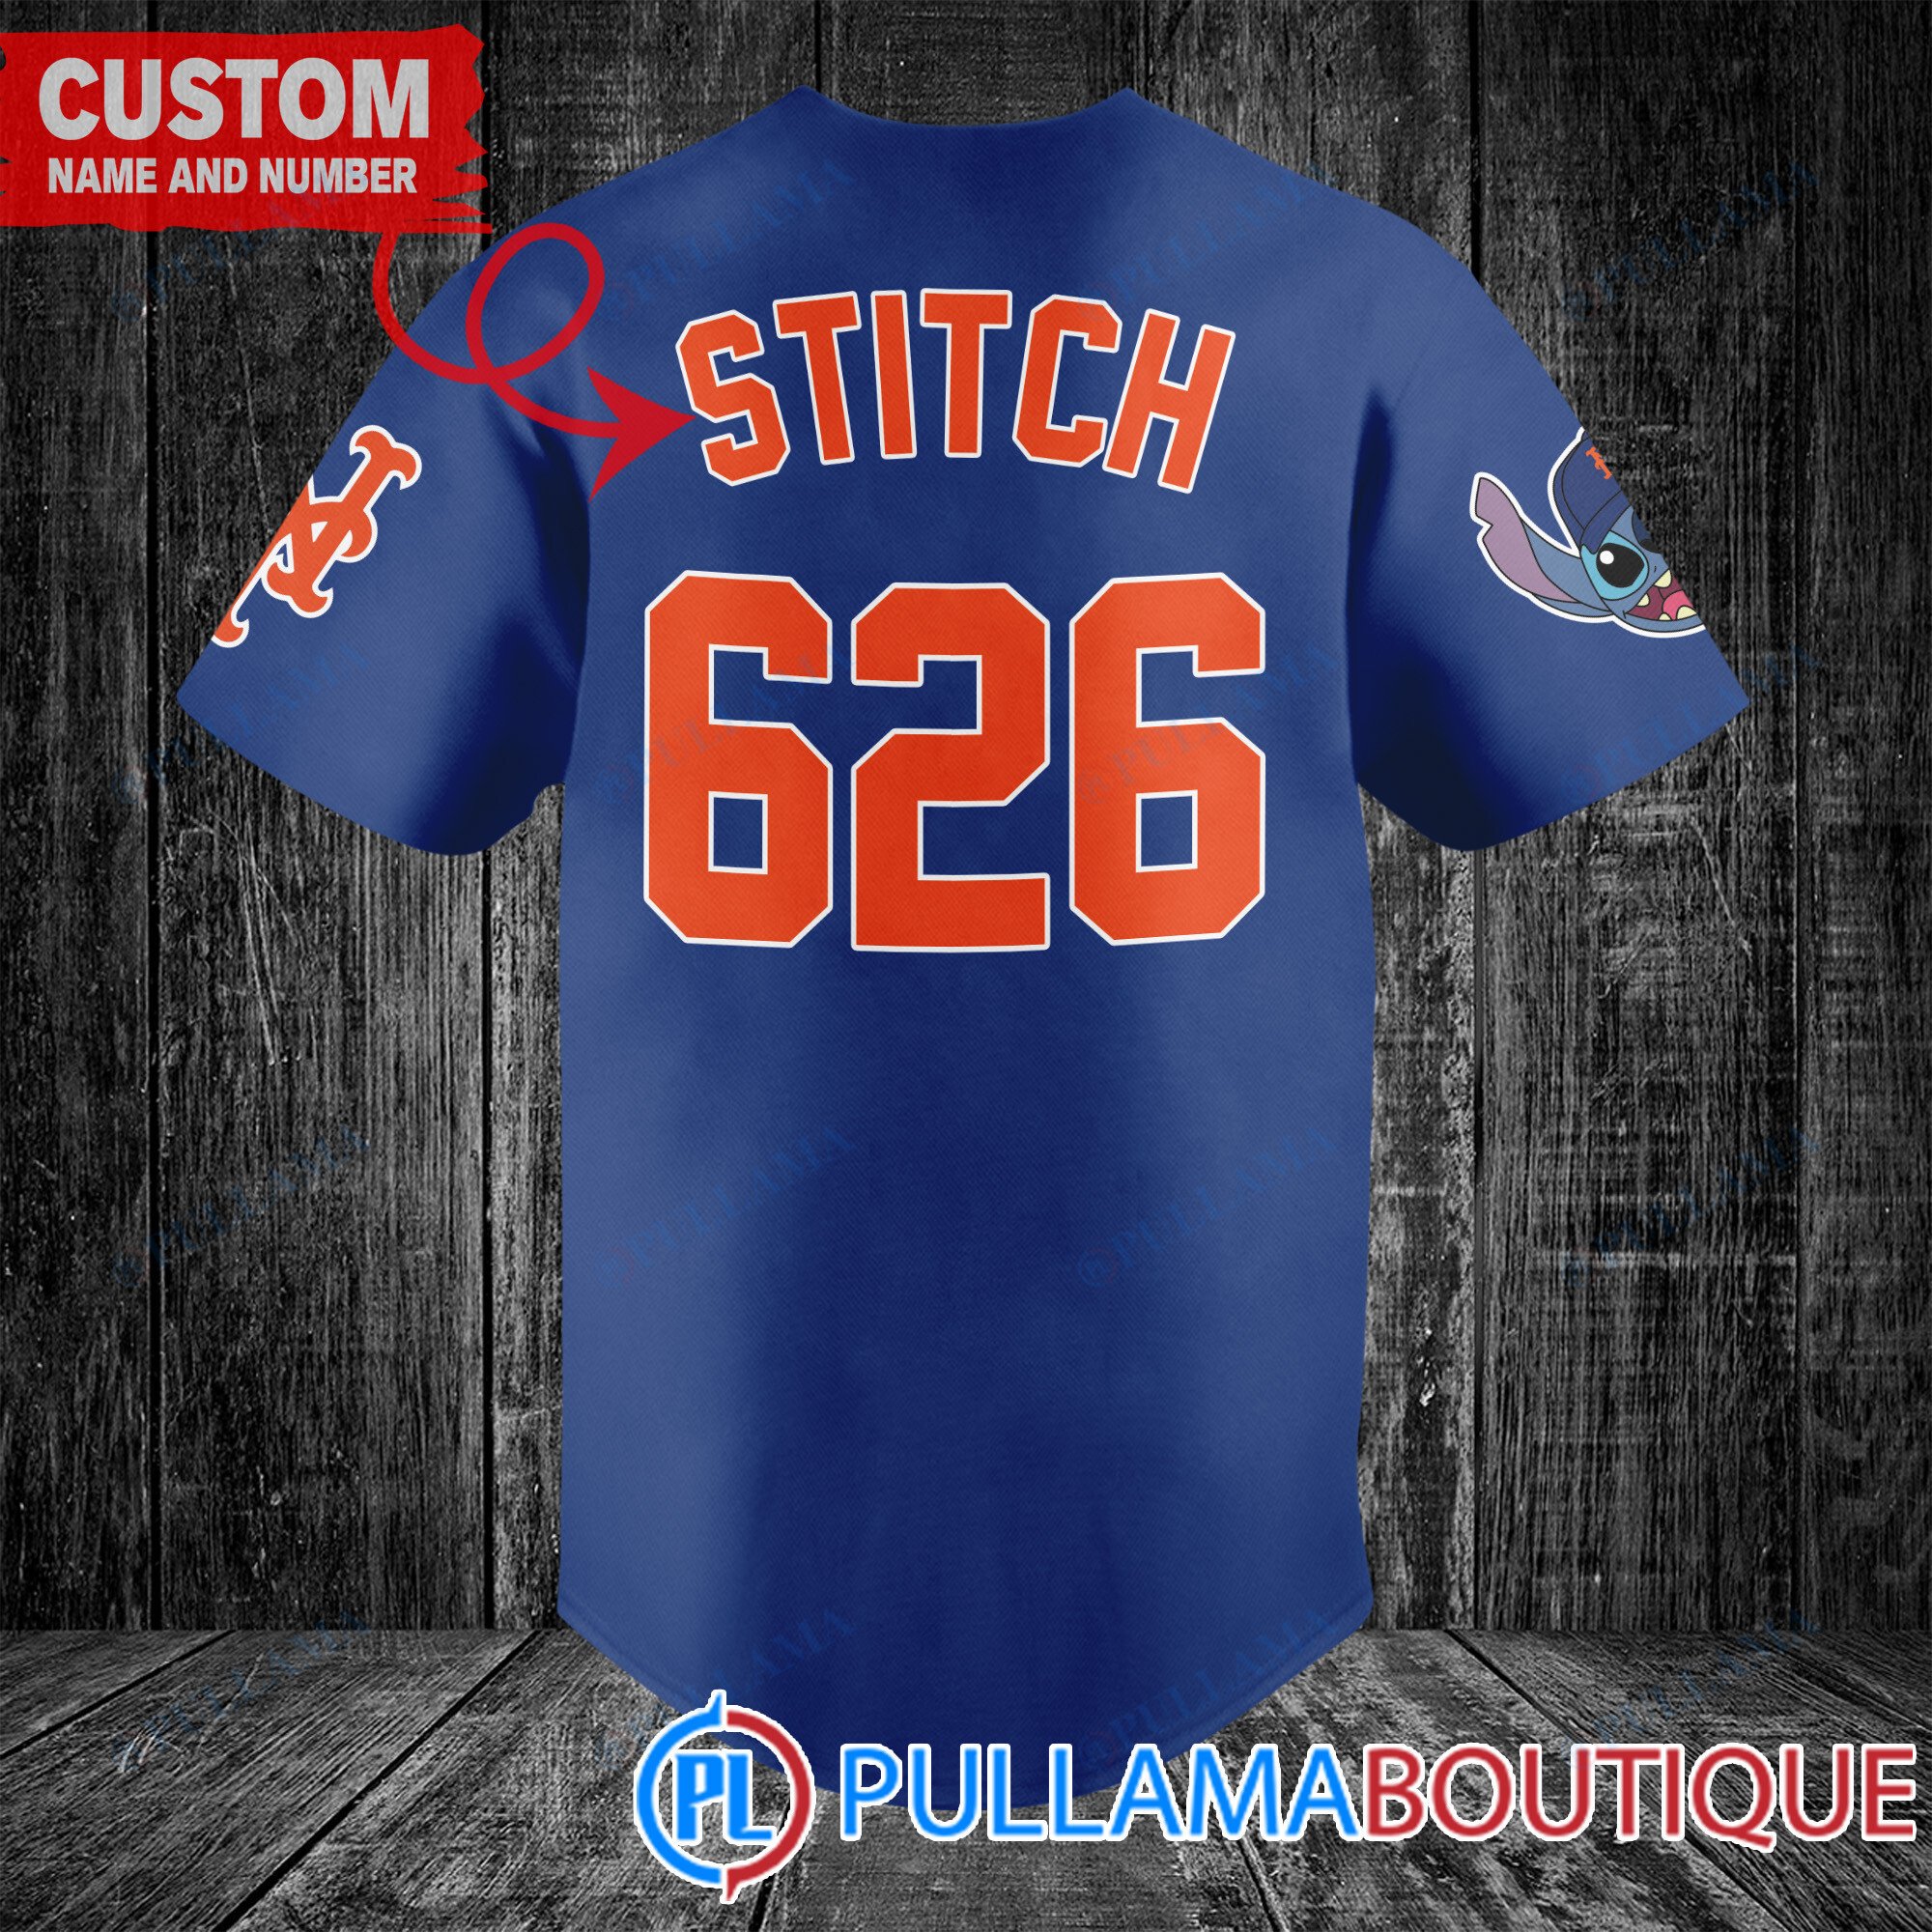 New York Mets Mickey Royal Jersey Baseball Shirt Custom Number And Name -  Banantees